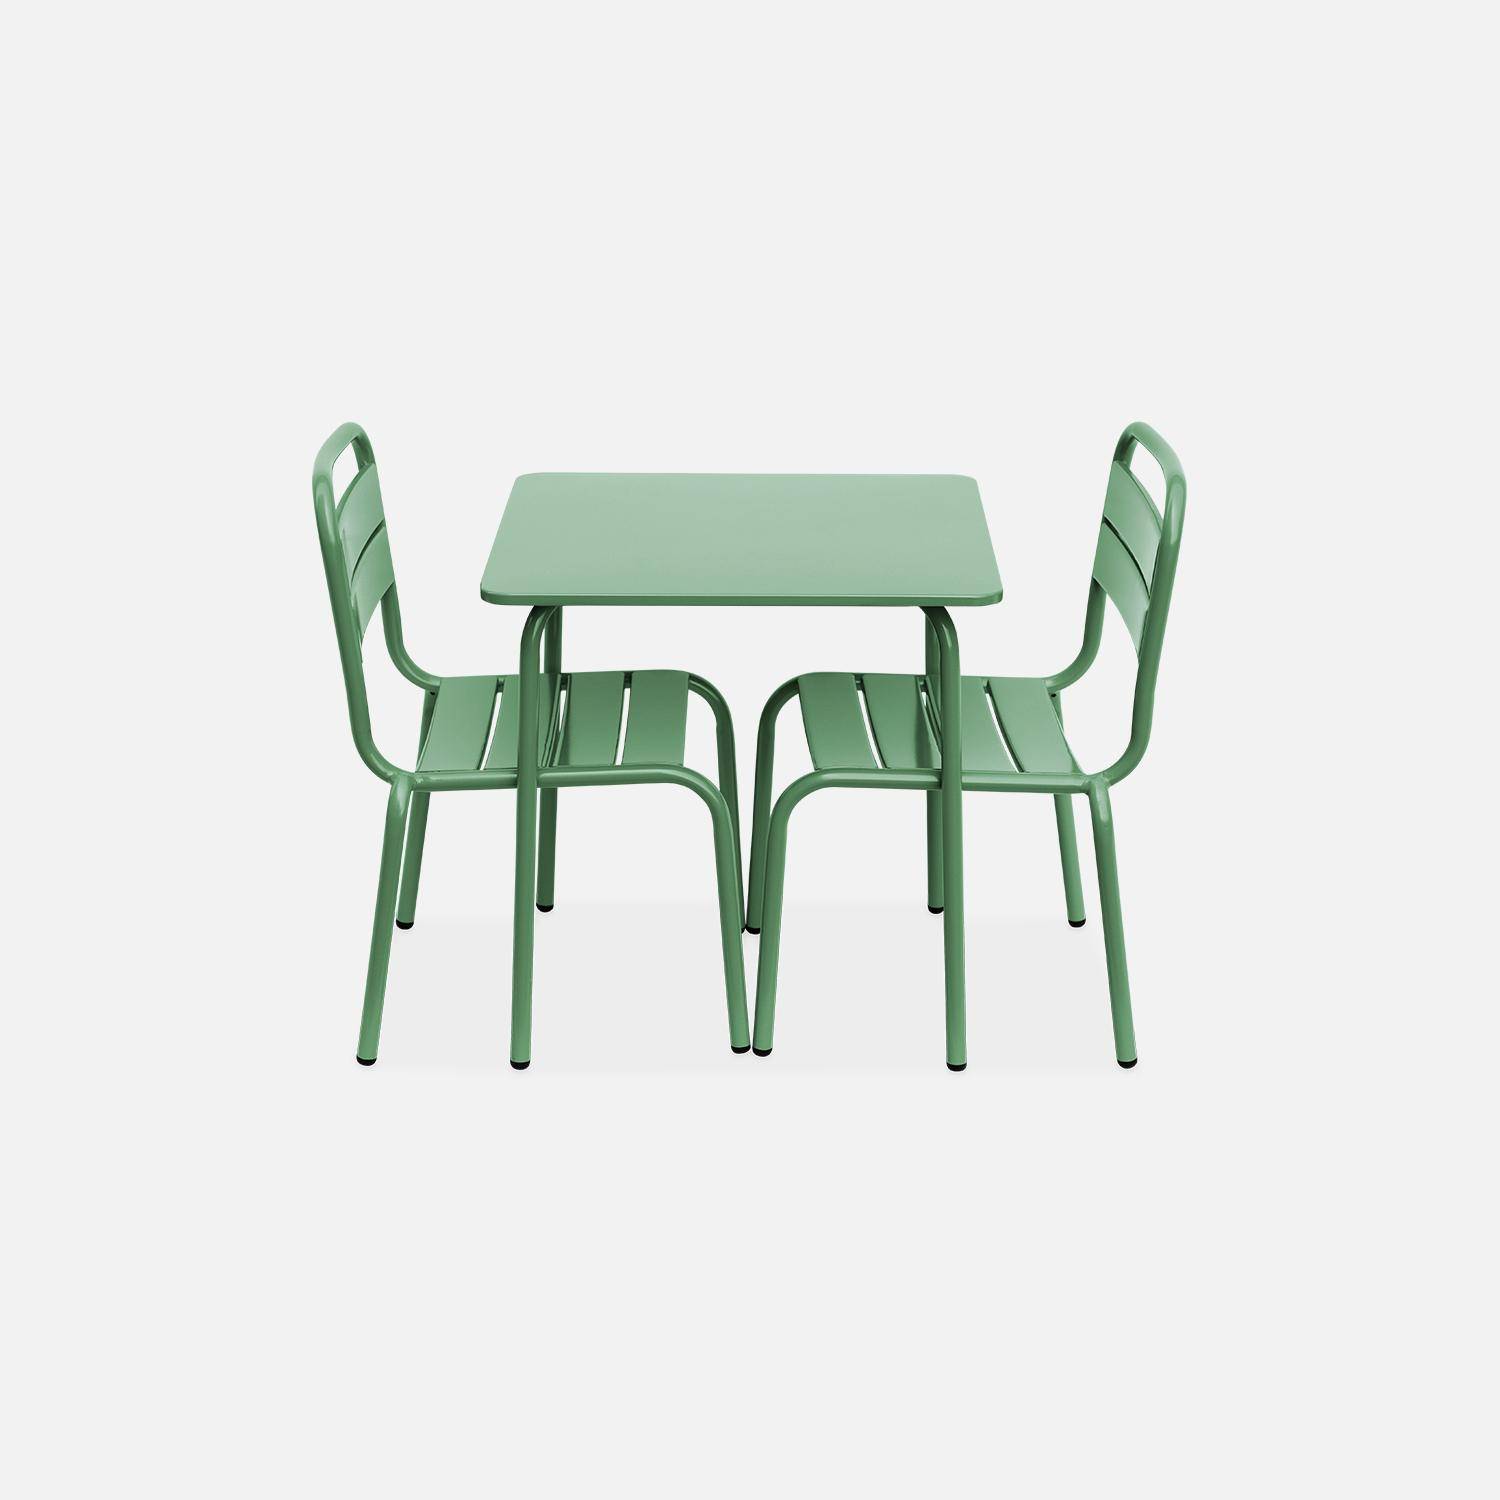 Tisch 48x48cm und 2 Stühle für Kinder, graugrün, 48x48cm, für draußen verwendbar - Anna Photo5